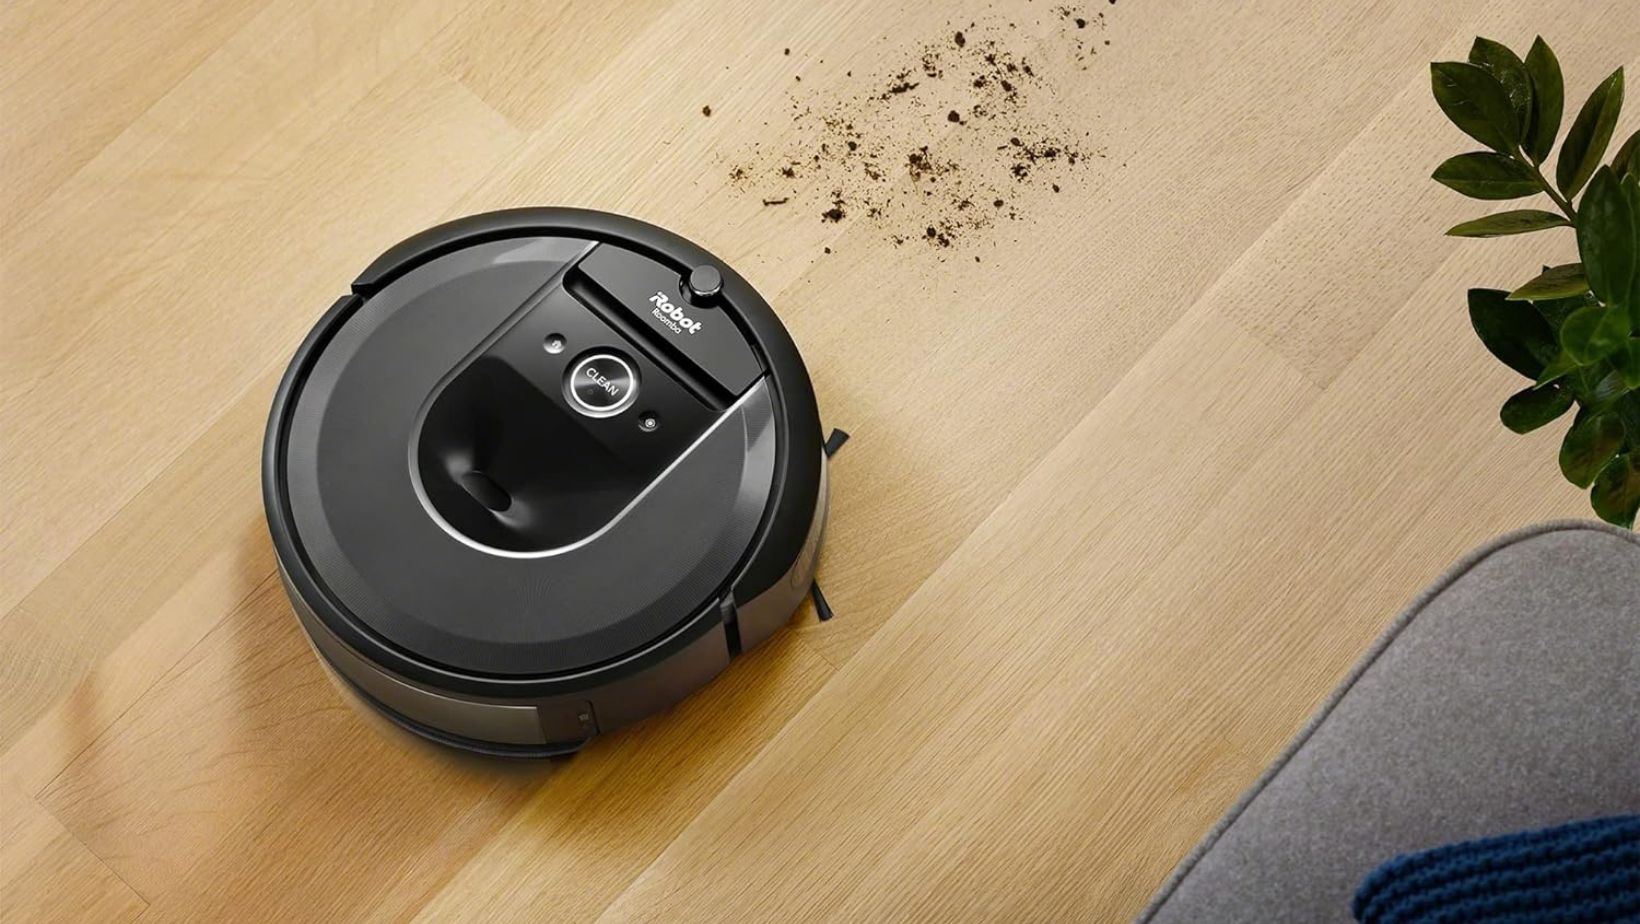 Cet aspirateur-robot lavant iRobot Roomba est en super promotion à